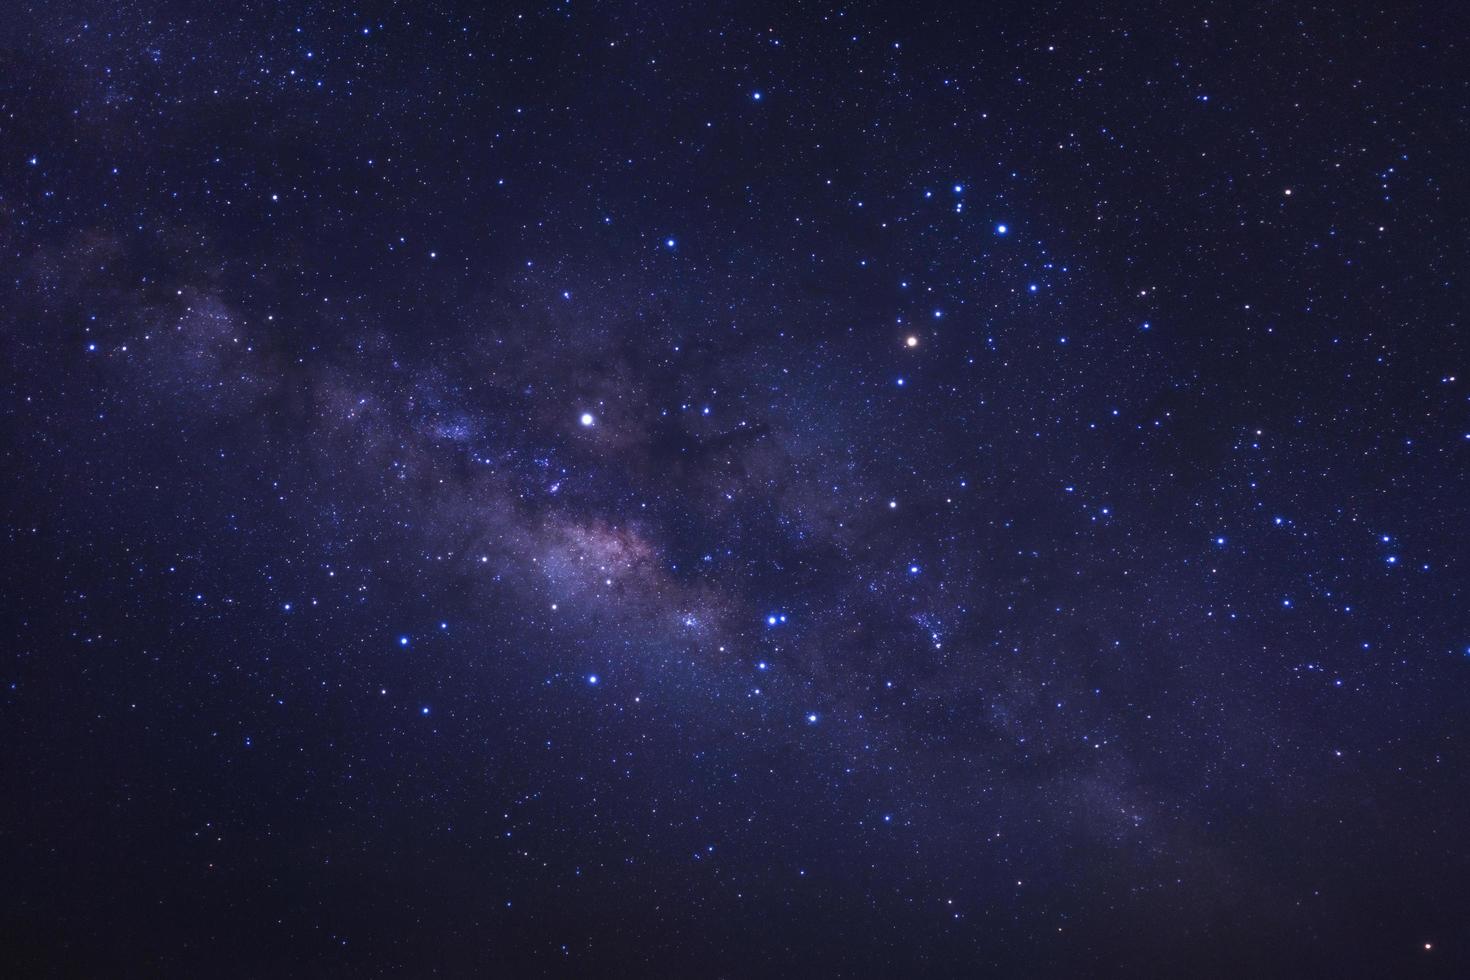 galaxie de la voie lactée avec des étoiles et de la poussière spatiale dans l'univers photo